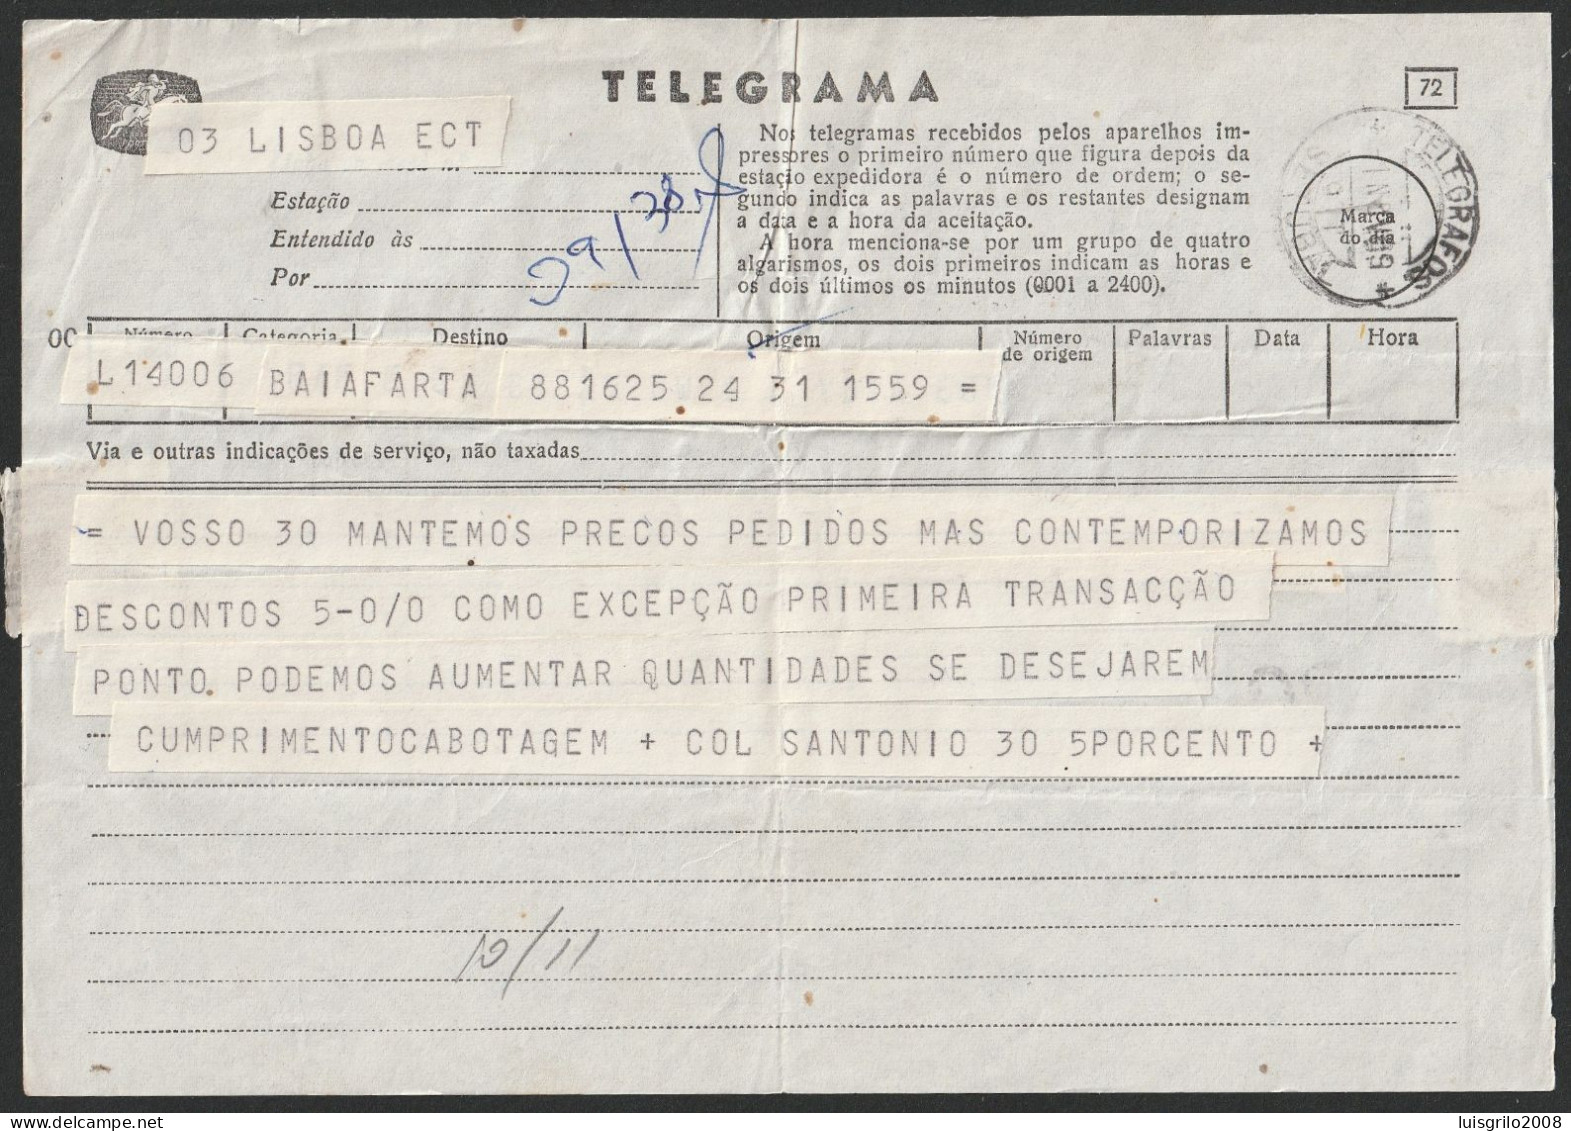 Telegram/ Telegrama - Lisboa > Setúbal -|- Postmark - TELEGRAFOS. Setúbal. 1959 - Storia Postale